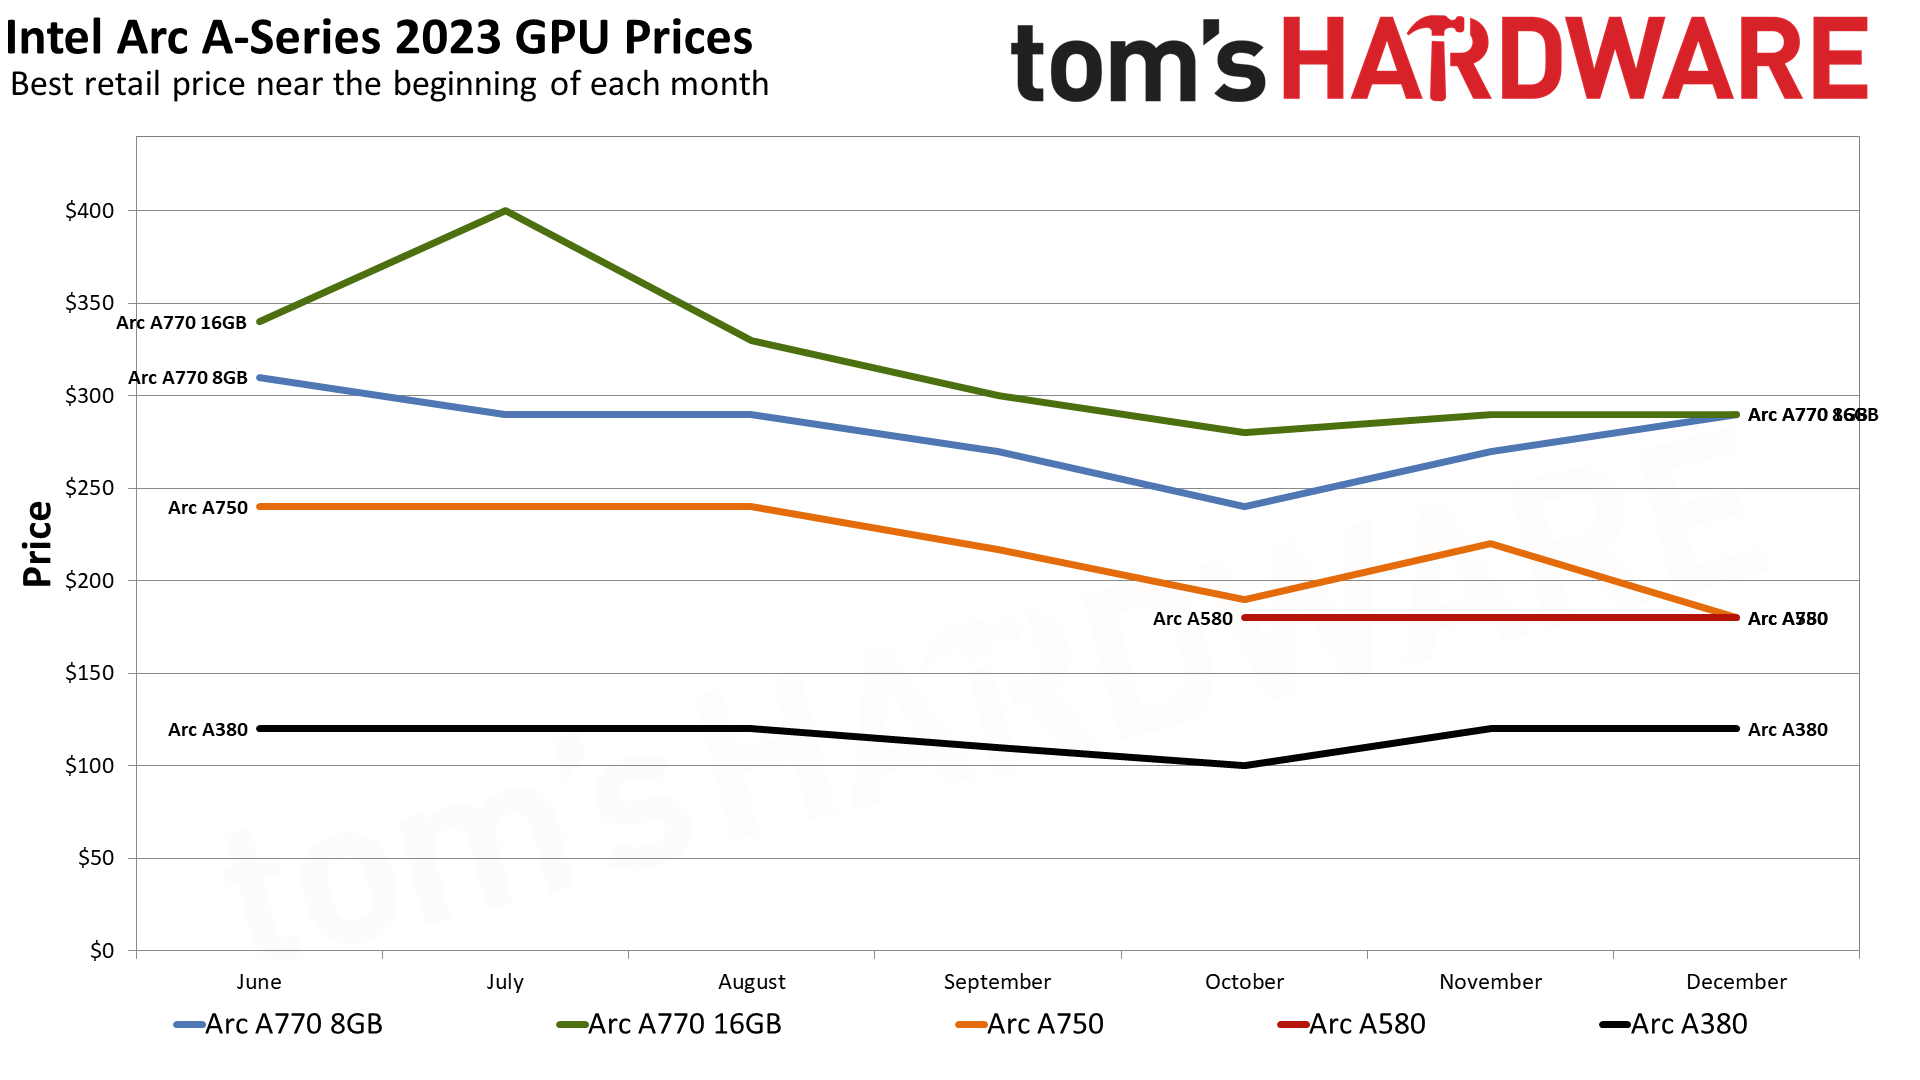 Tablas de precios mensuales de GPU